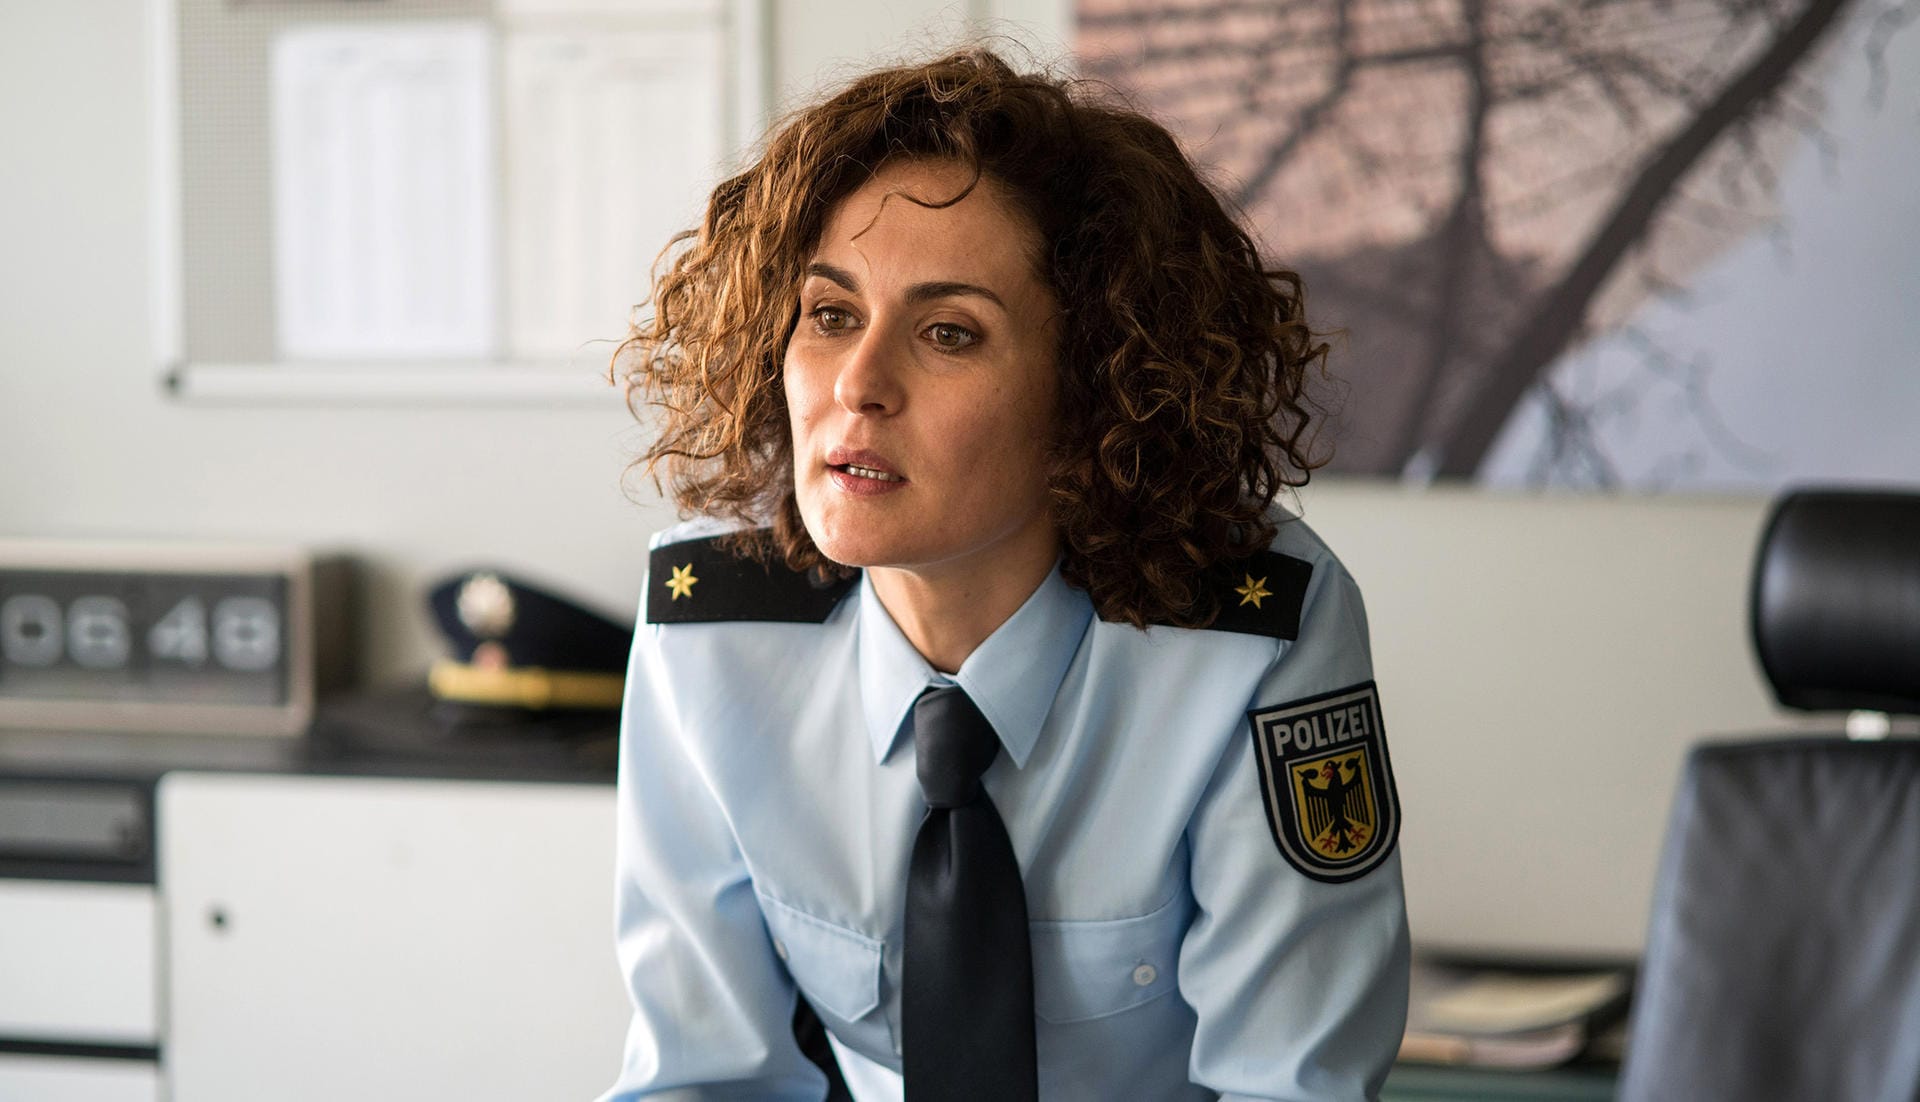 Polizeirätin Hellinger (Marie-Lou Sellem) ist die Chefin der Inspektoren am Flughafen. Sie leitet den Einsatz um die Suche nach dem verschwundenen Terroristen Enis Günday alias "Ibn Aziz".